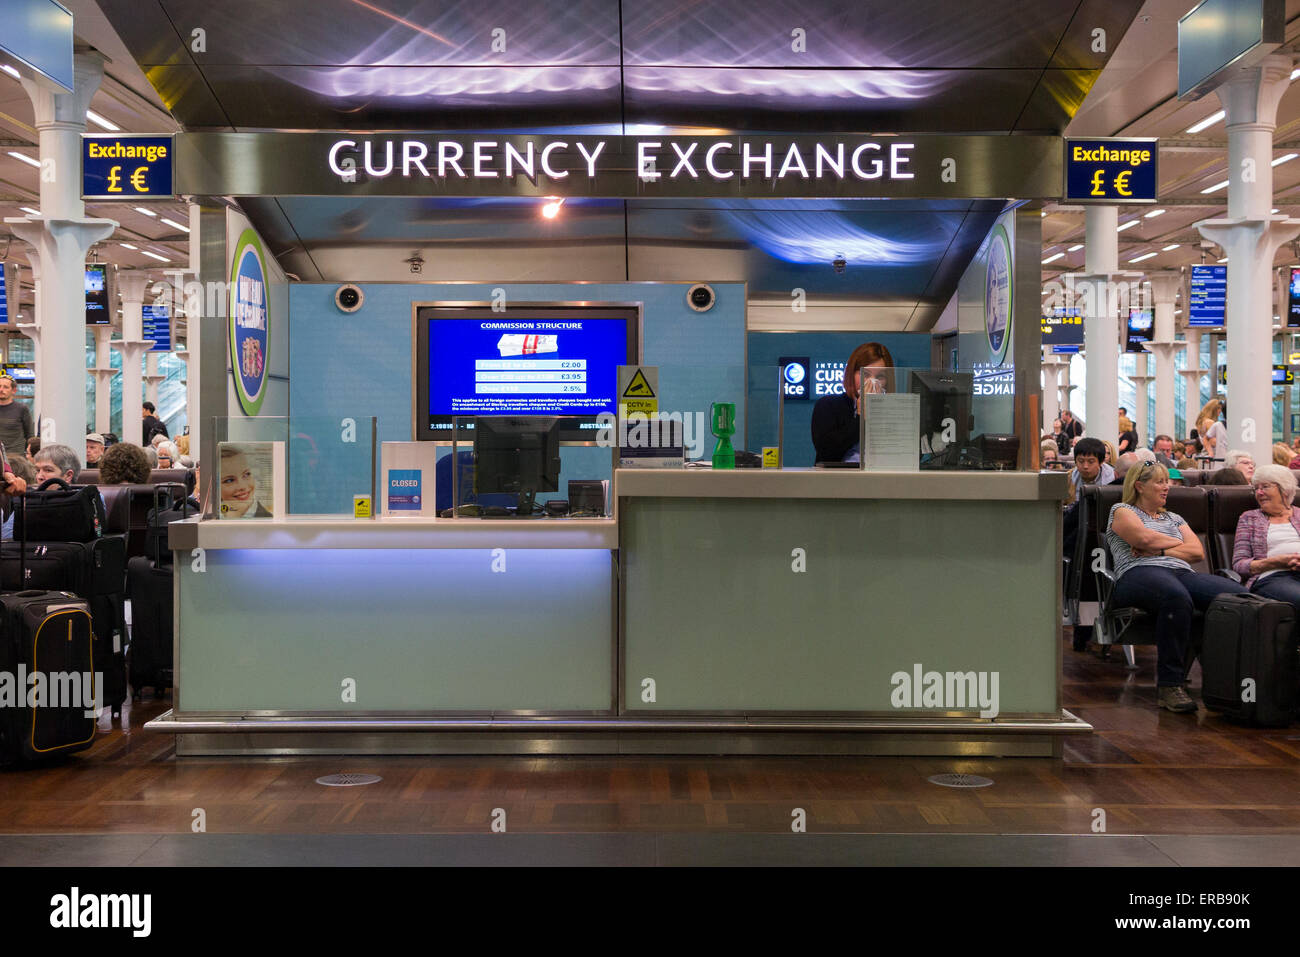 ICE bureau de change : International currency exchange - dans le salon de départ Eurostar de la gare internationale St Pancras London UK Banque D'Images